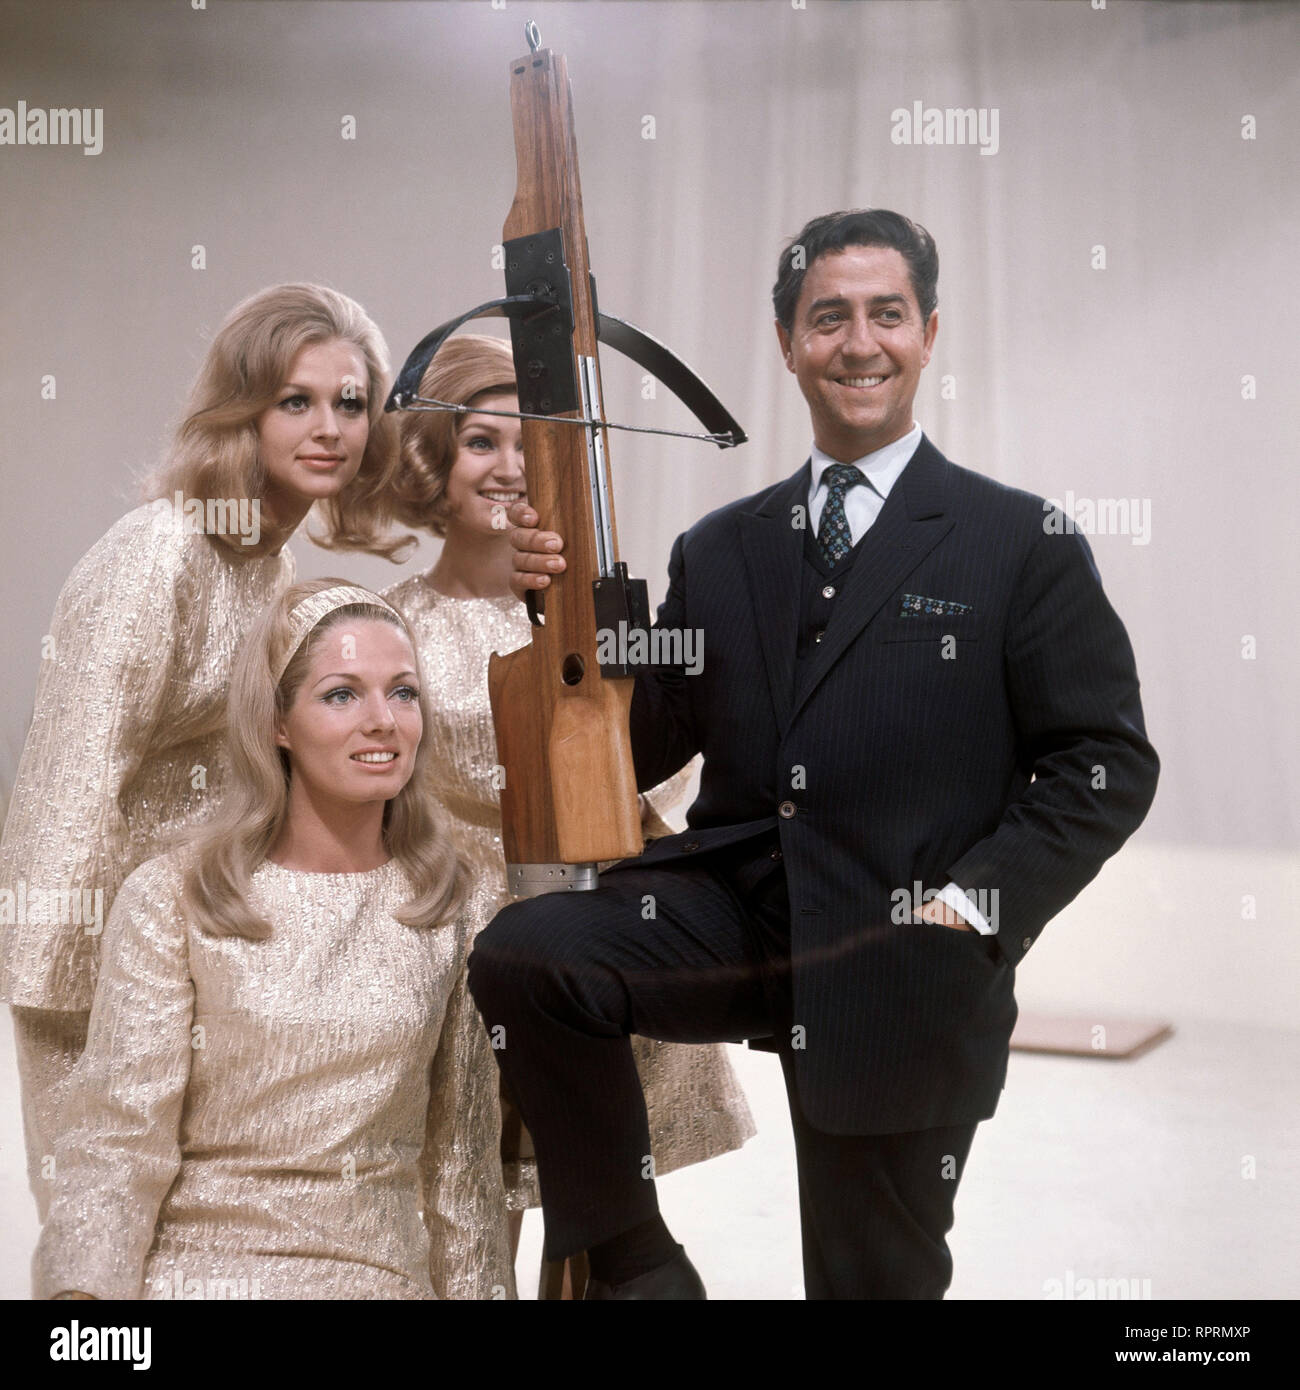 DER GOLDENE SCHUSS VICO TORRIANI mit Armbrust und Assistentinnen, 1969  Stock Photo - Alamy